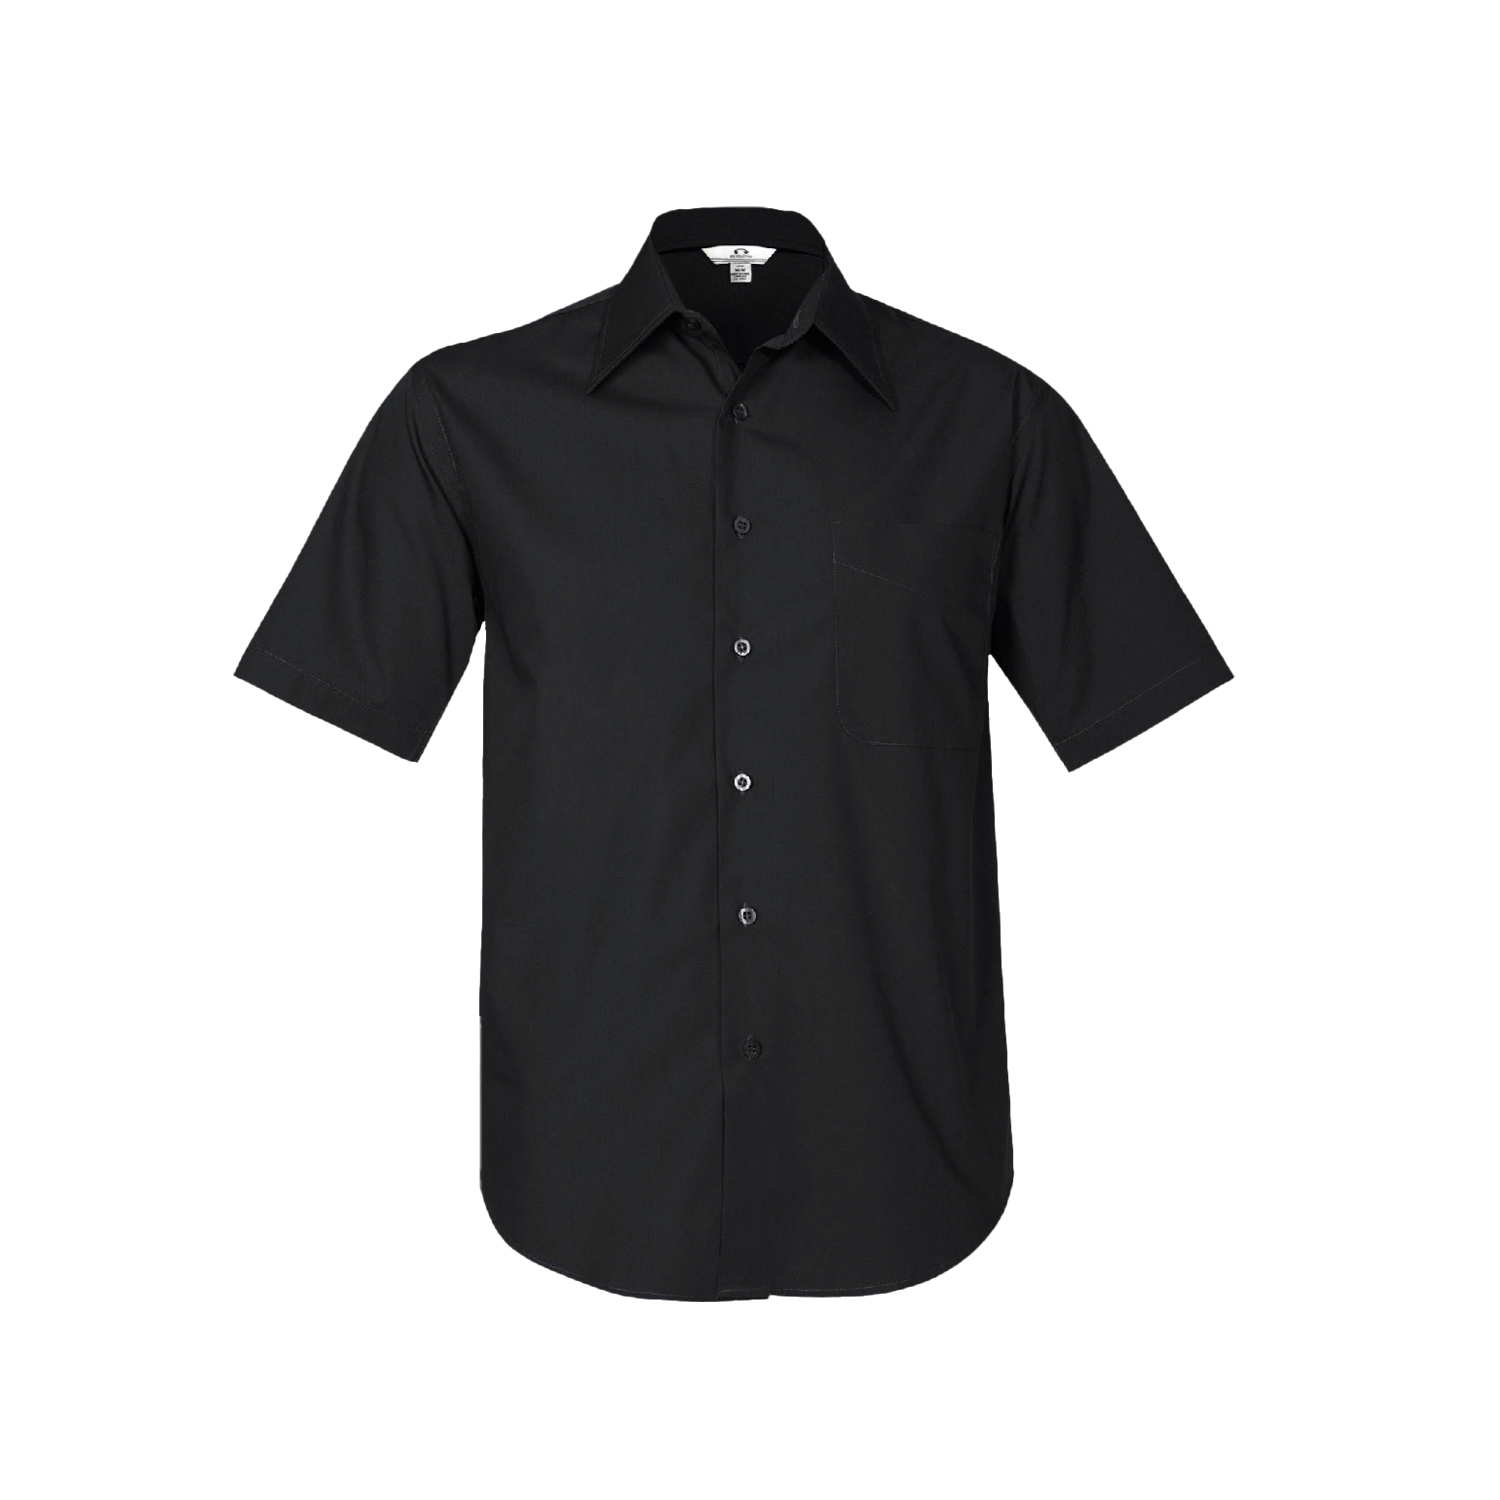 Biz Collection Men's Metro Short Sleeve Shirt - Black - Totally Workwear